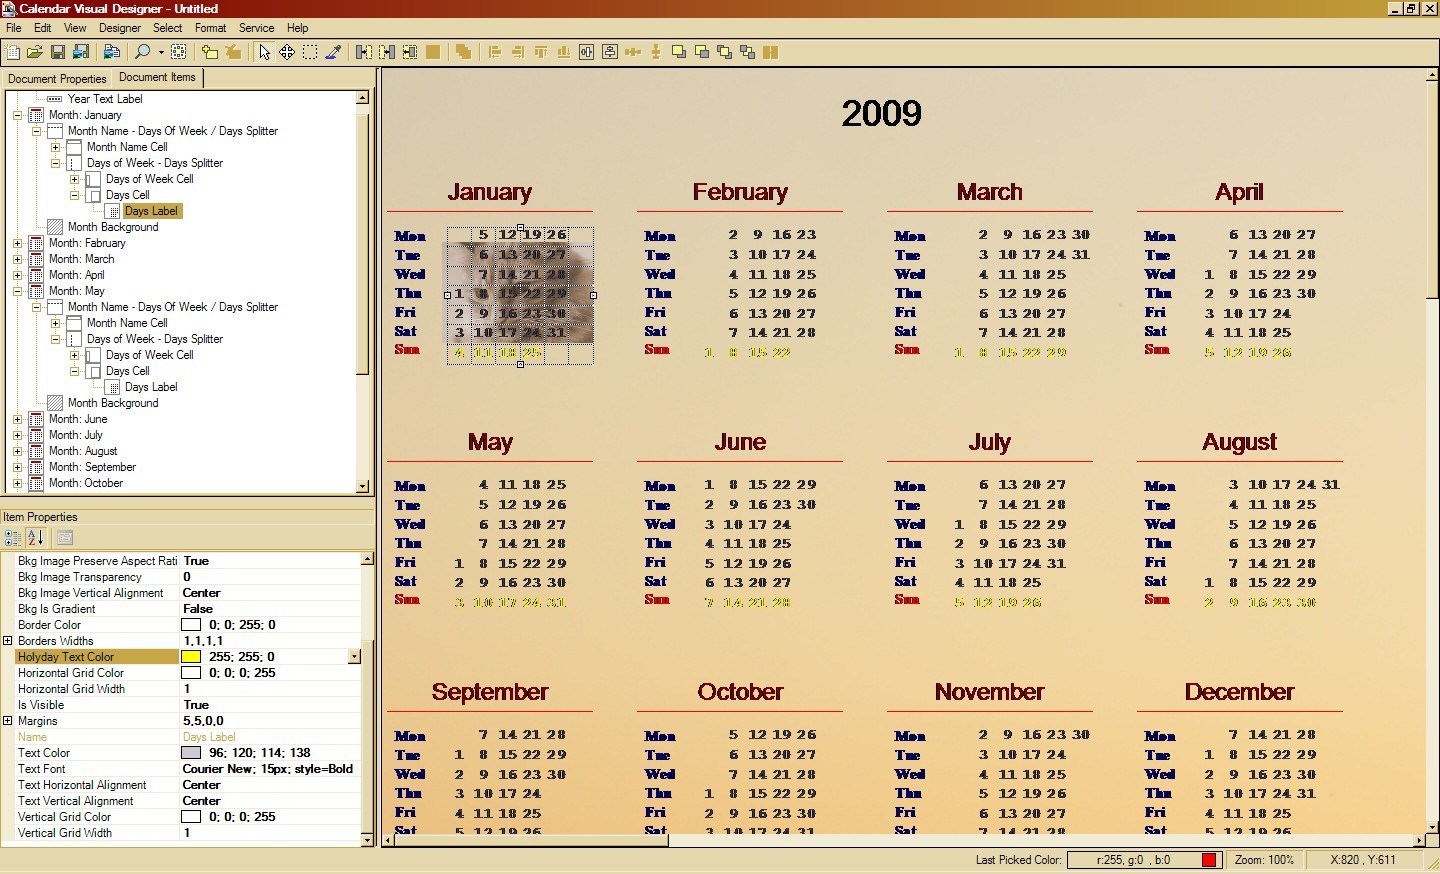 Calendar Visual Designer 1.2 : Calendar's design